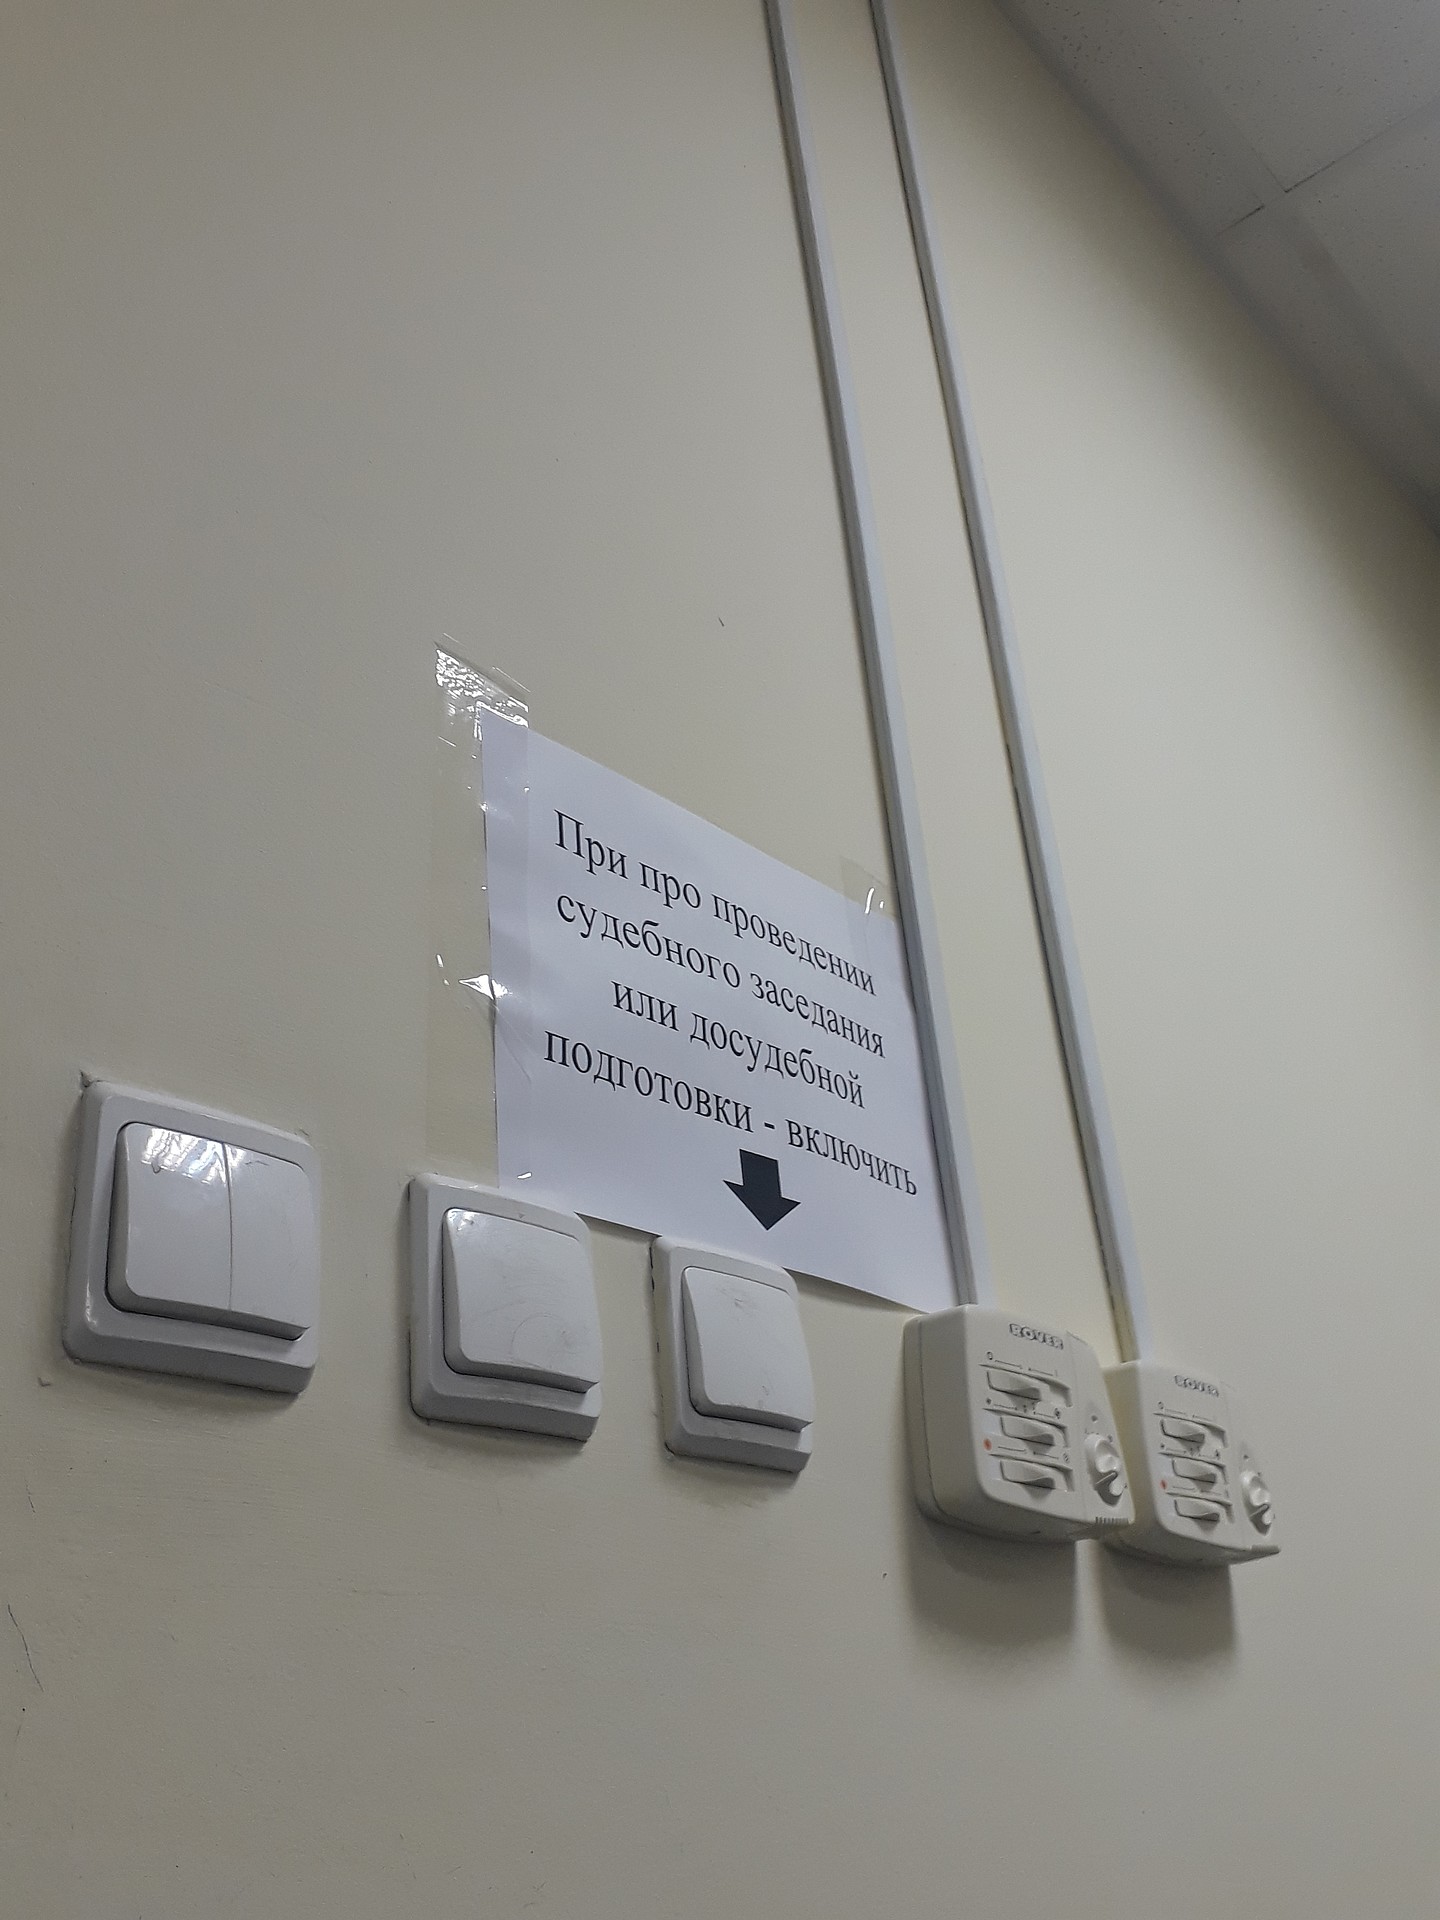 По инструкции над выключателем можно судить об уровне адекватности некоторых сотрудников данного учреждения 